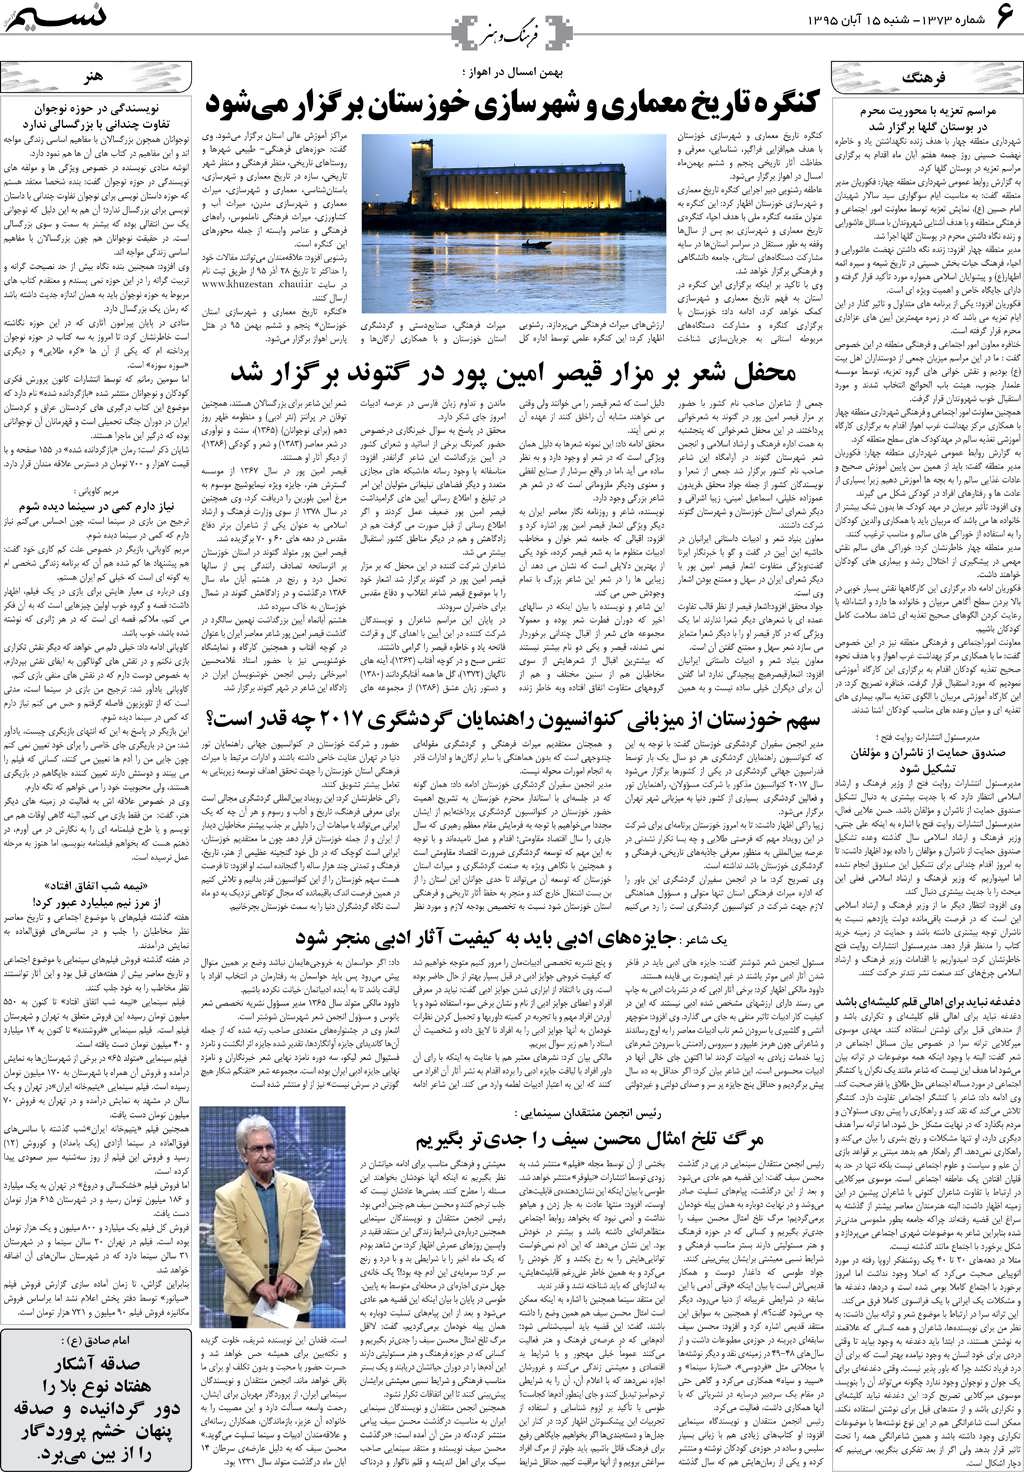 صفحه فرهنگ و هنر روزنامه نسیم شماره 1373